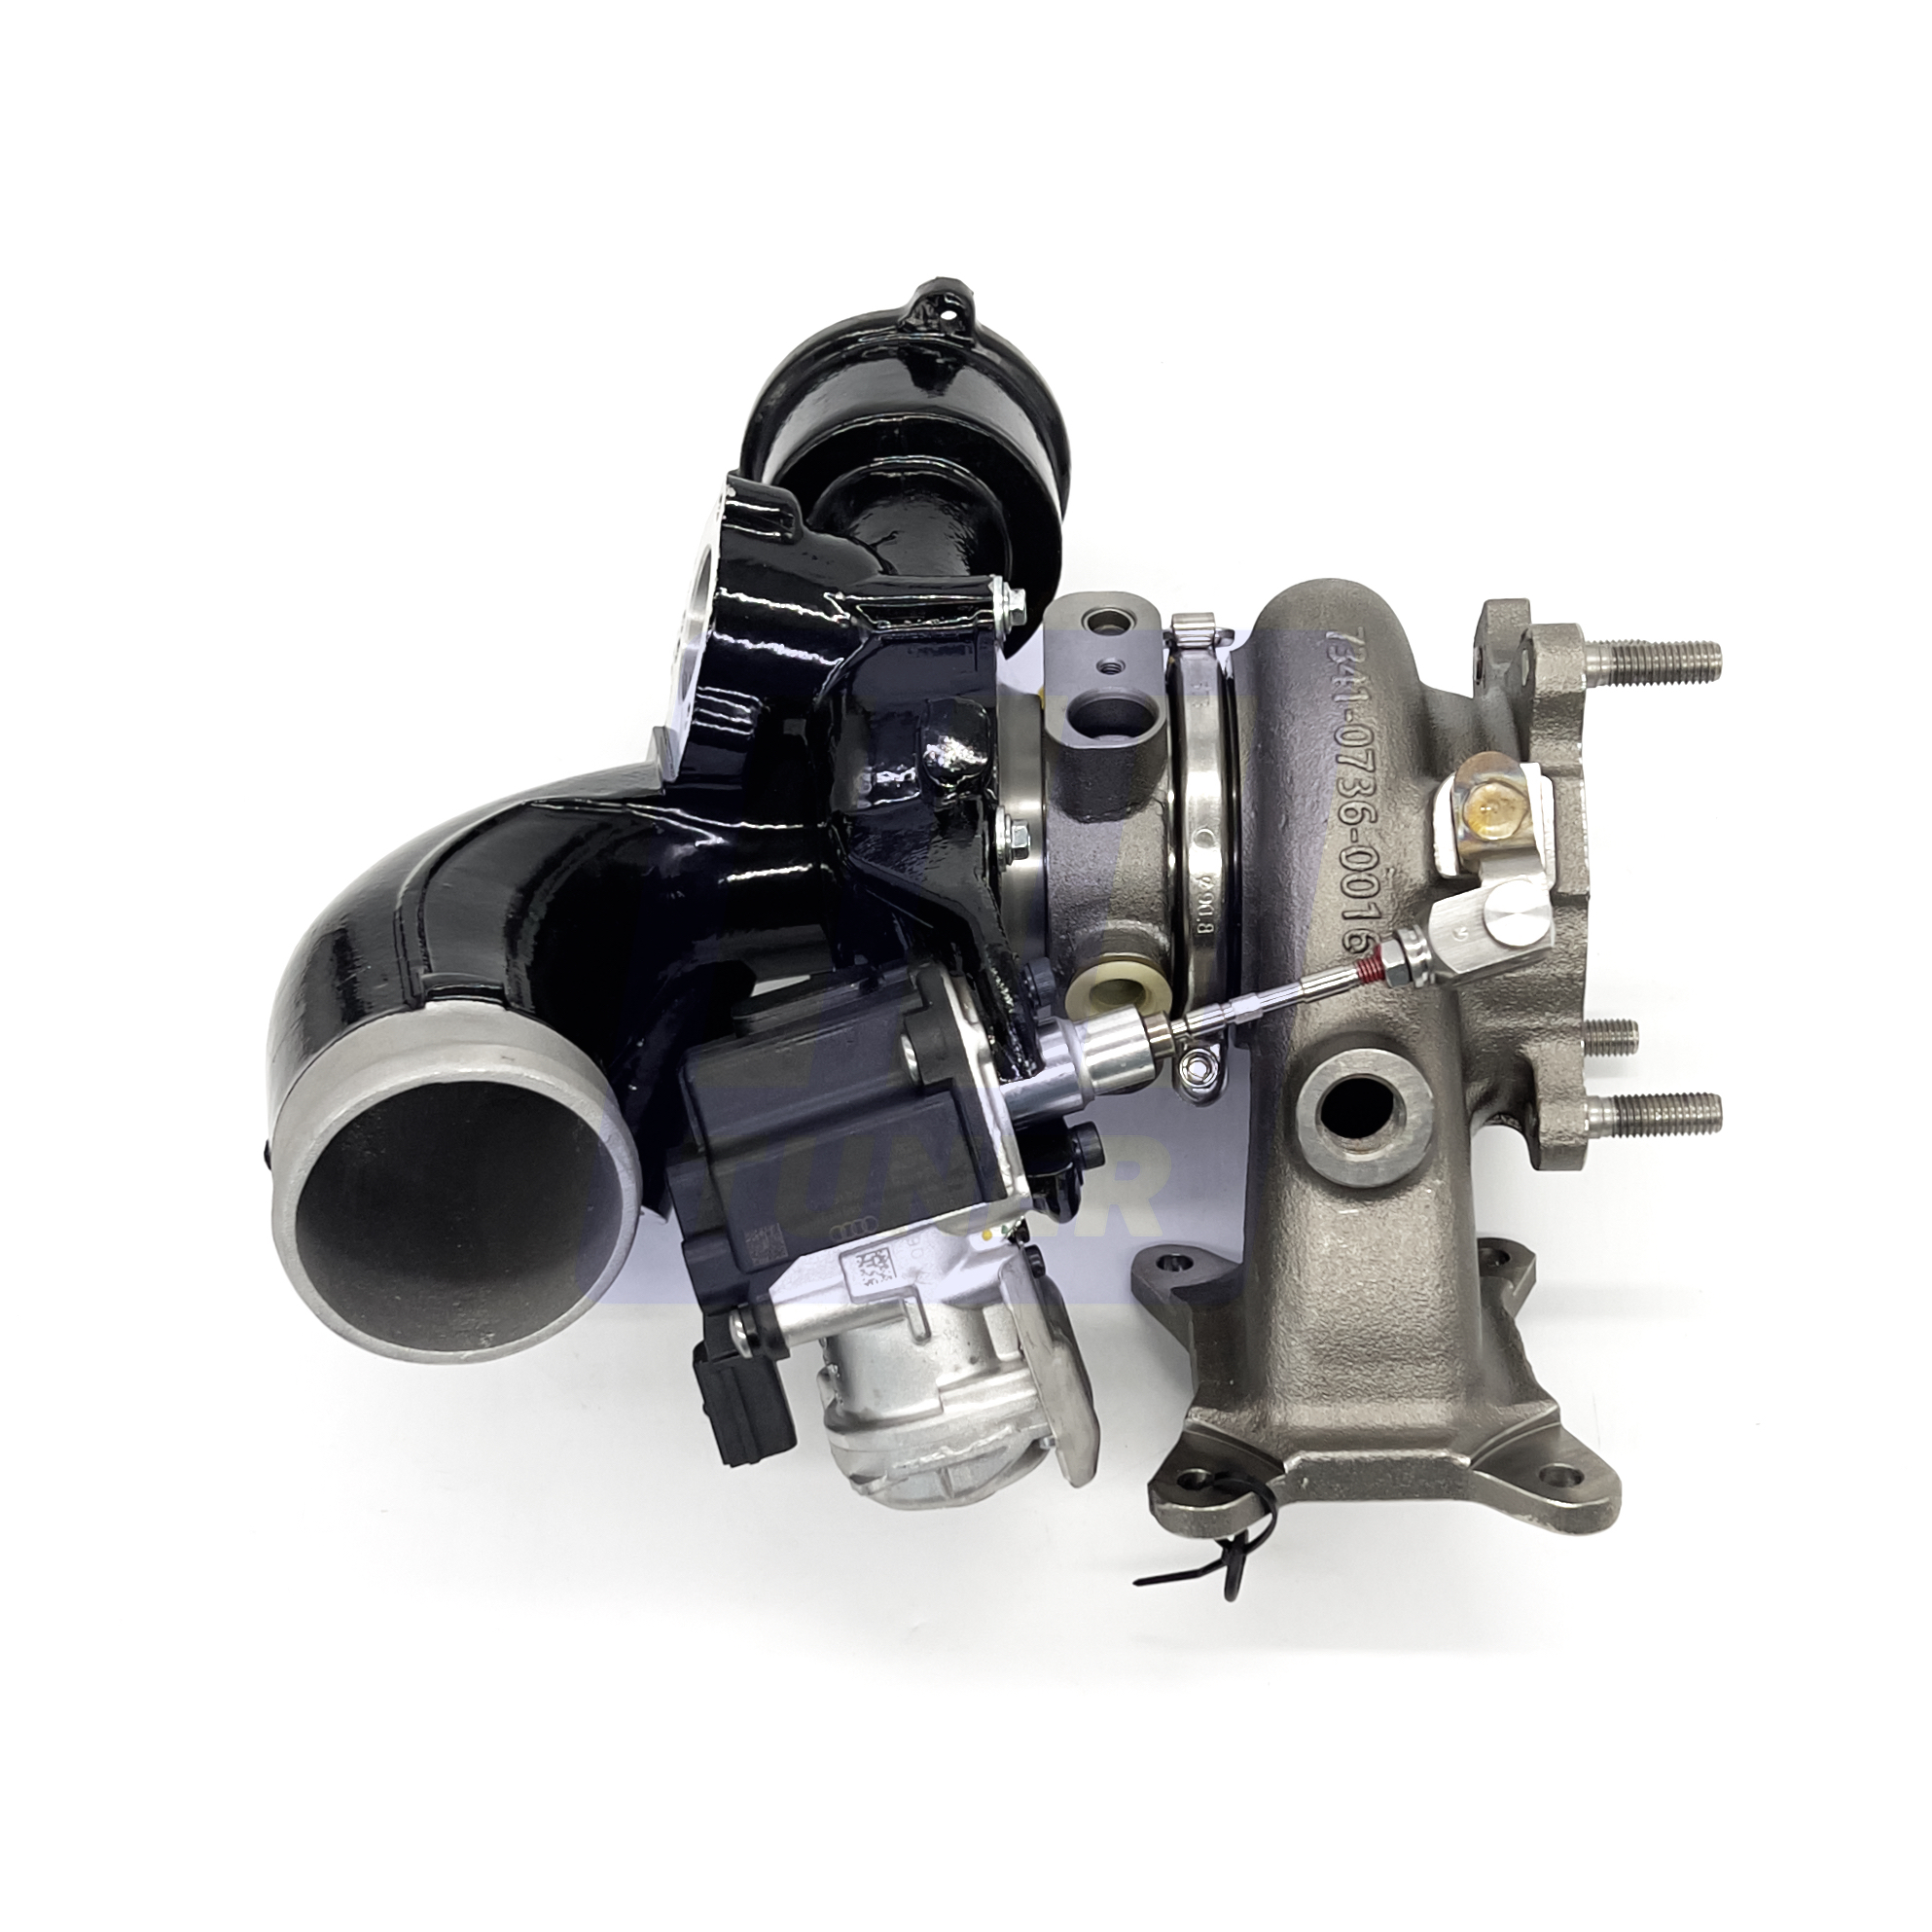 Turbosystems Гибридный турбокомпрессор Stage 2 VAG IS20 для Audi (продольный двигатель)